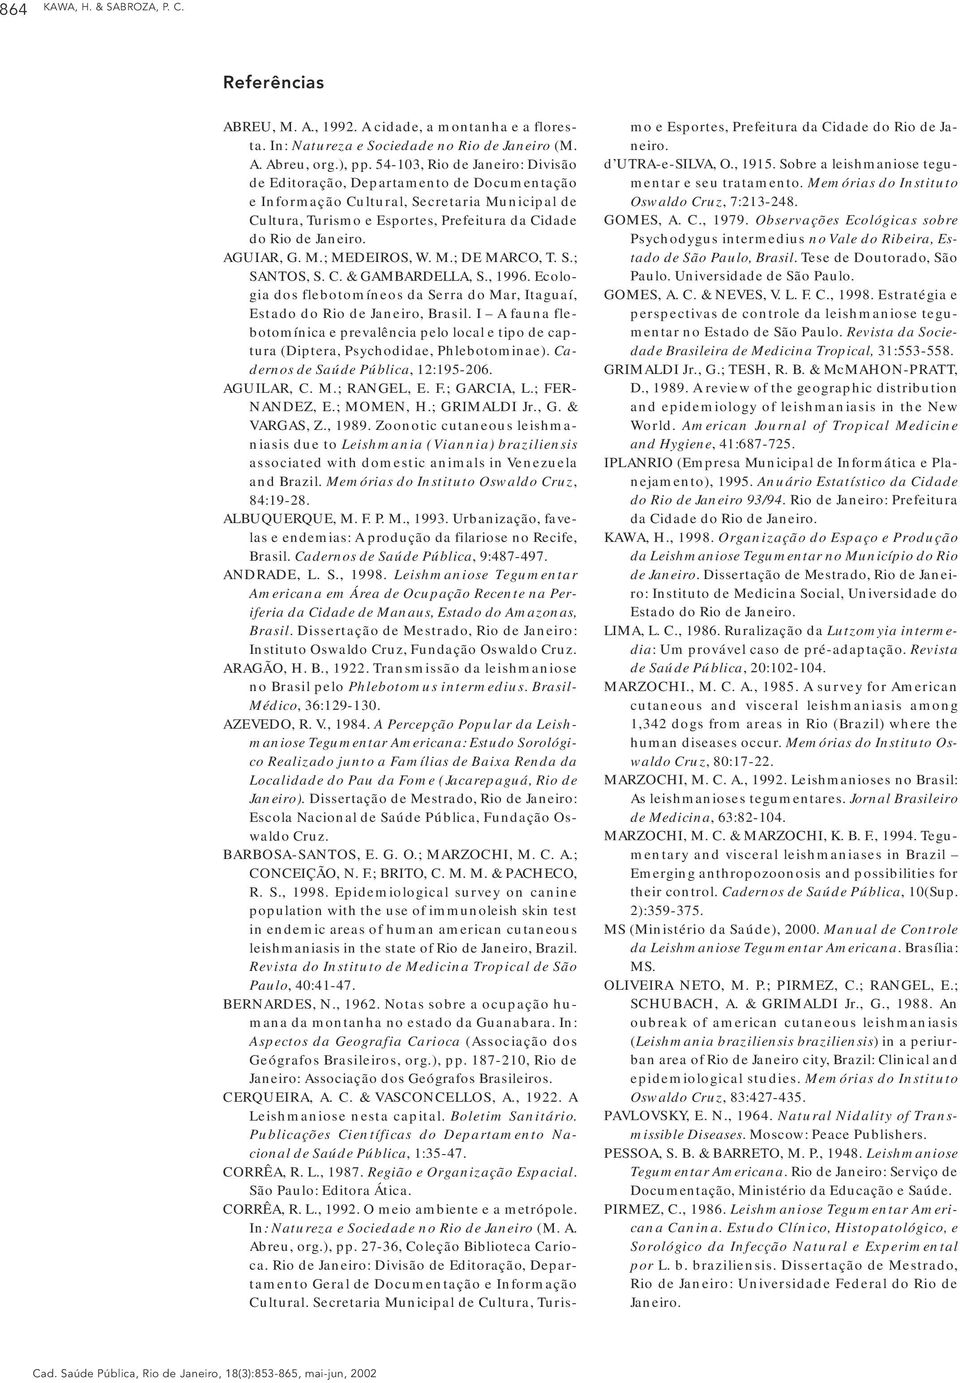 AGUIAR, G. M.; MEDEIROS, W. M.; DE MARCO, T. S.; SANTOS, S. C. & GAMBARDELLA, S., 1996. Ecologia dos flebotomíneos da Serra do Mar, Itaguaí, Estado do Rio de Janeiro, Brasil.